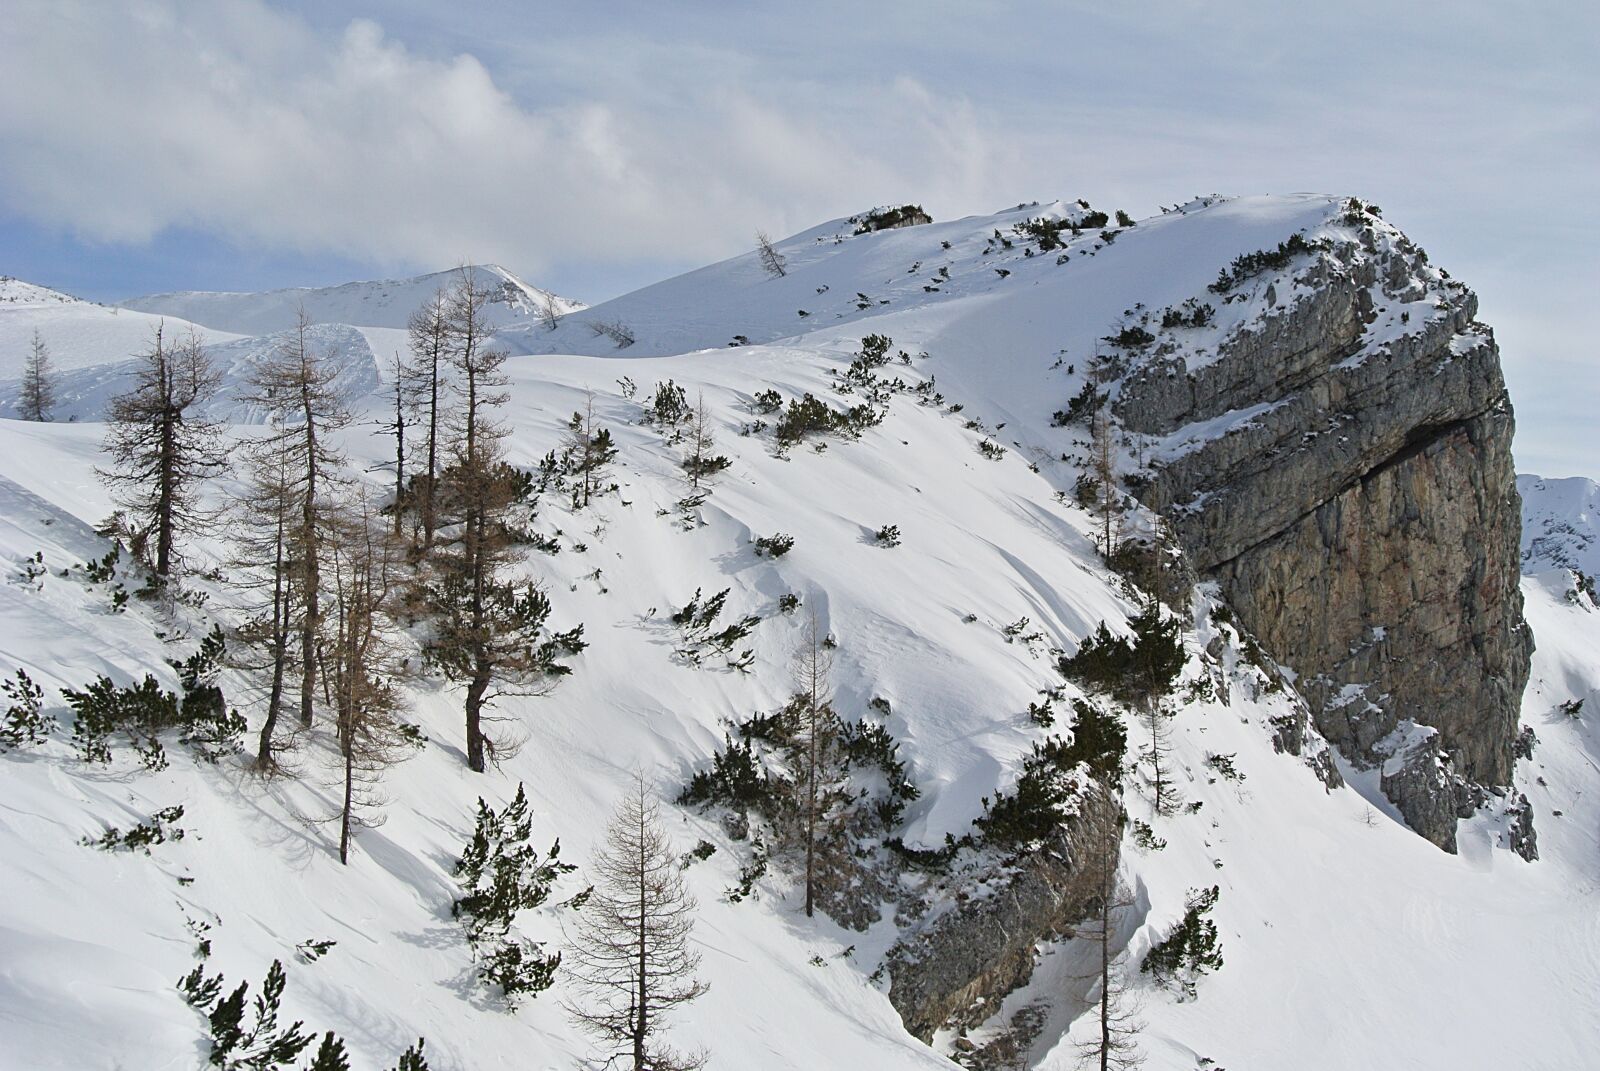 Nikon 1 J1 sample photo. Mountains, snow, winter photography